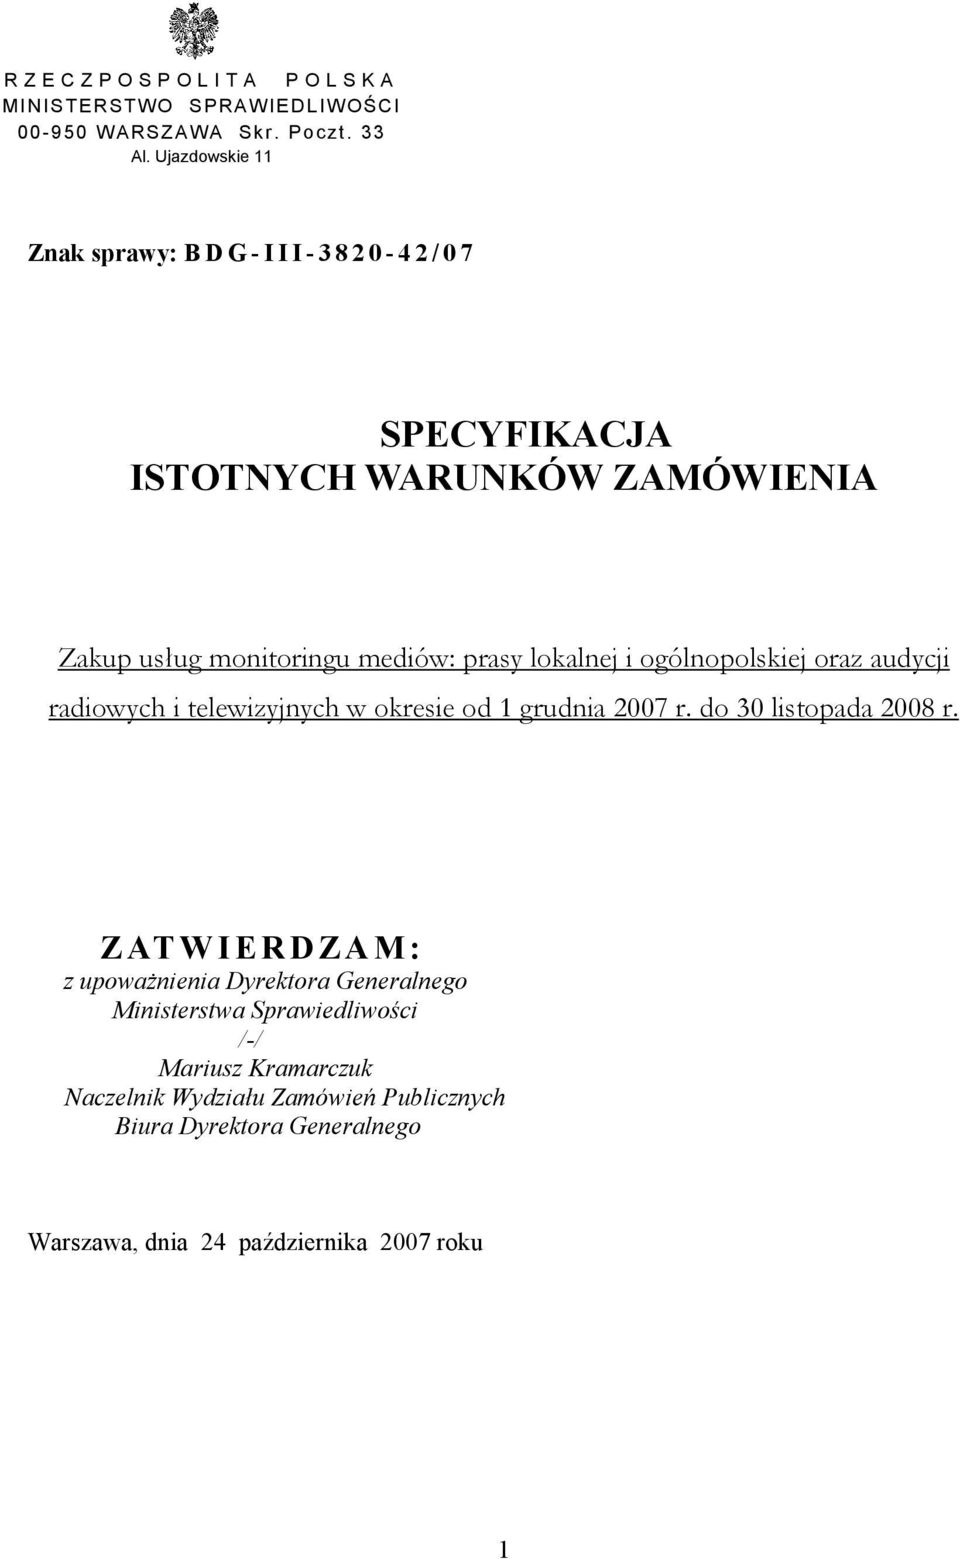 i ogólnopolskiej oraz audycji radiowych i telewizyjnych w okresie od 1 grudnia 2007 r. do 30 listopada 2008 r.